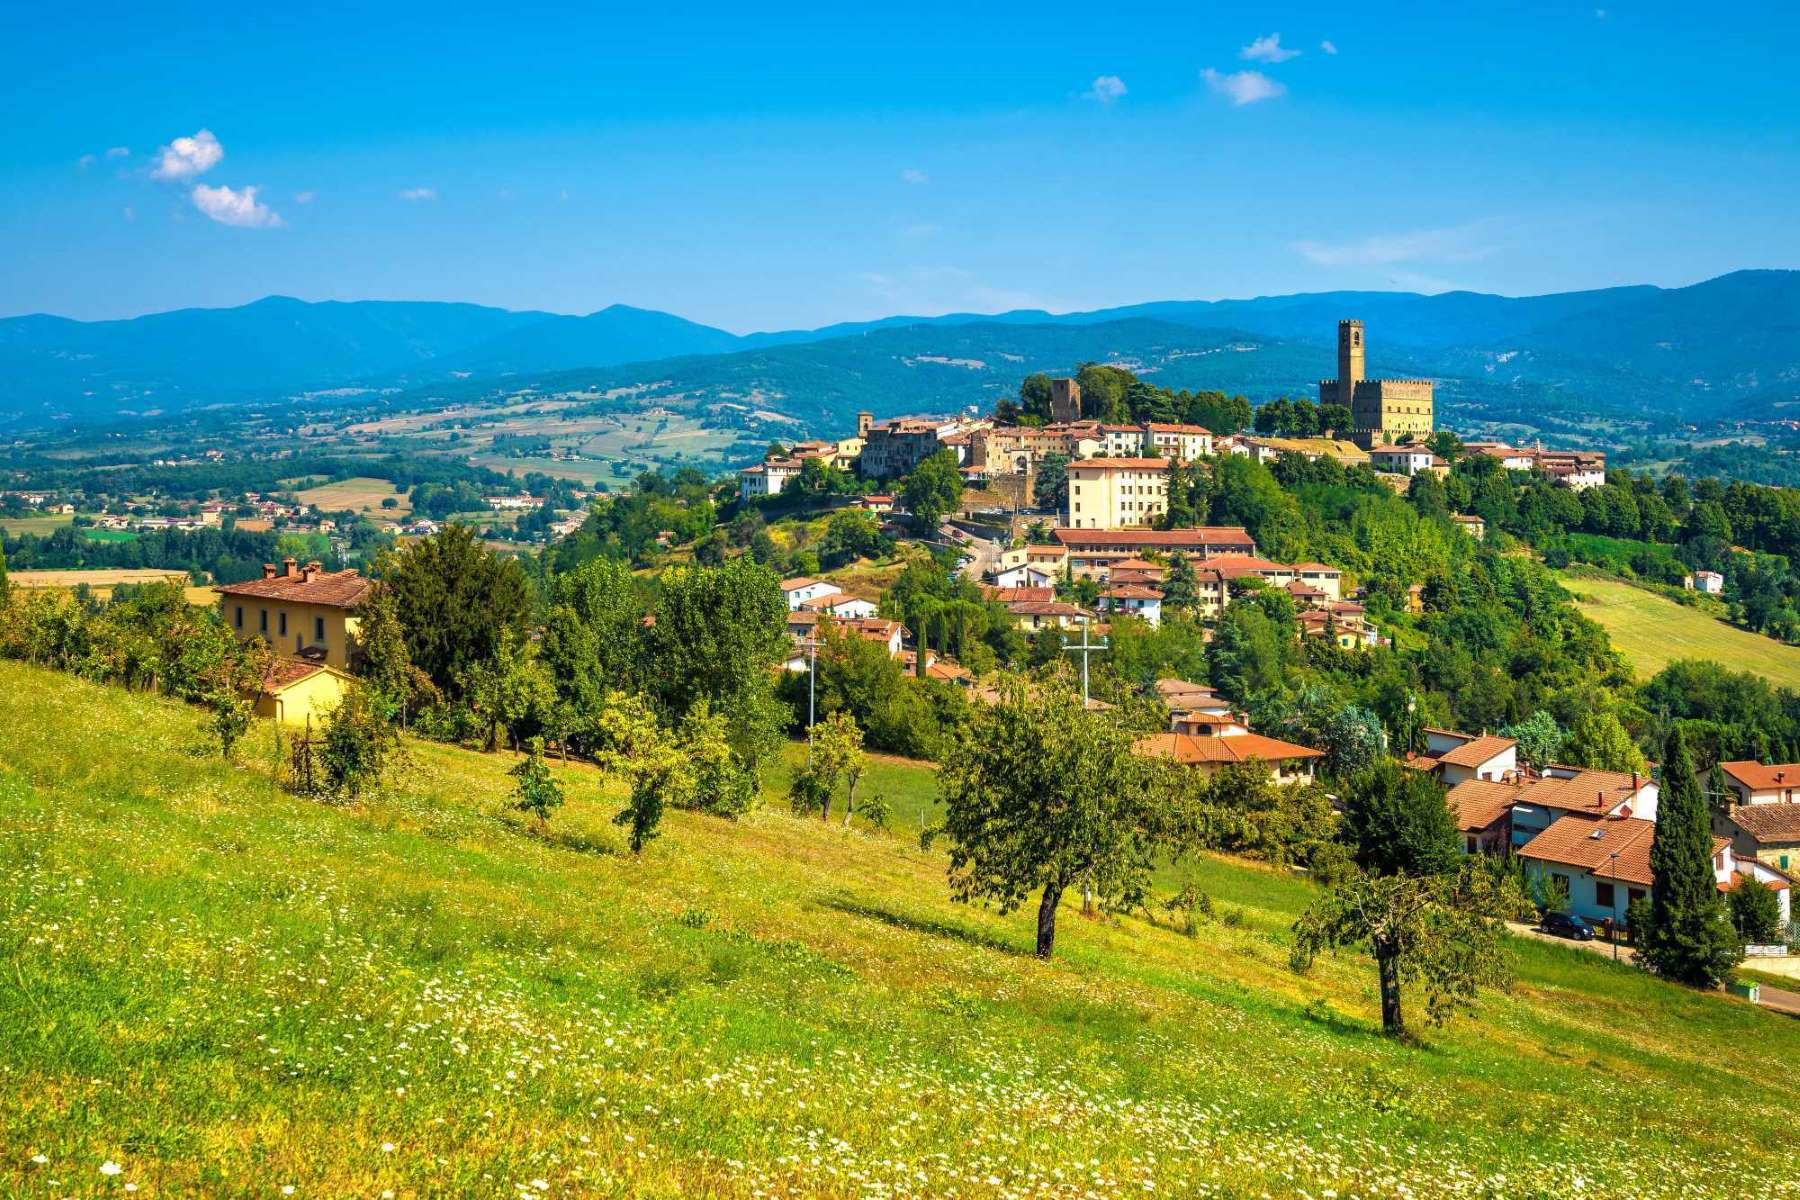 Il borgo di Poppi e la vallata circostante, Casentino, Toscana